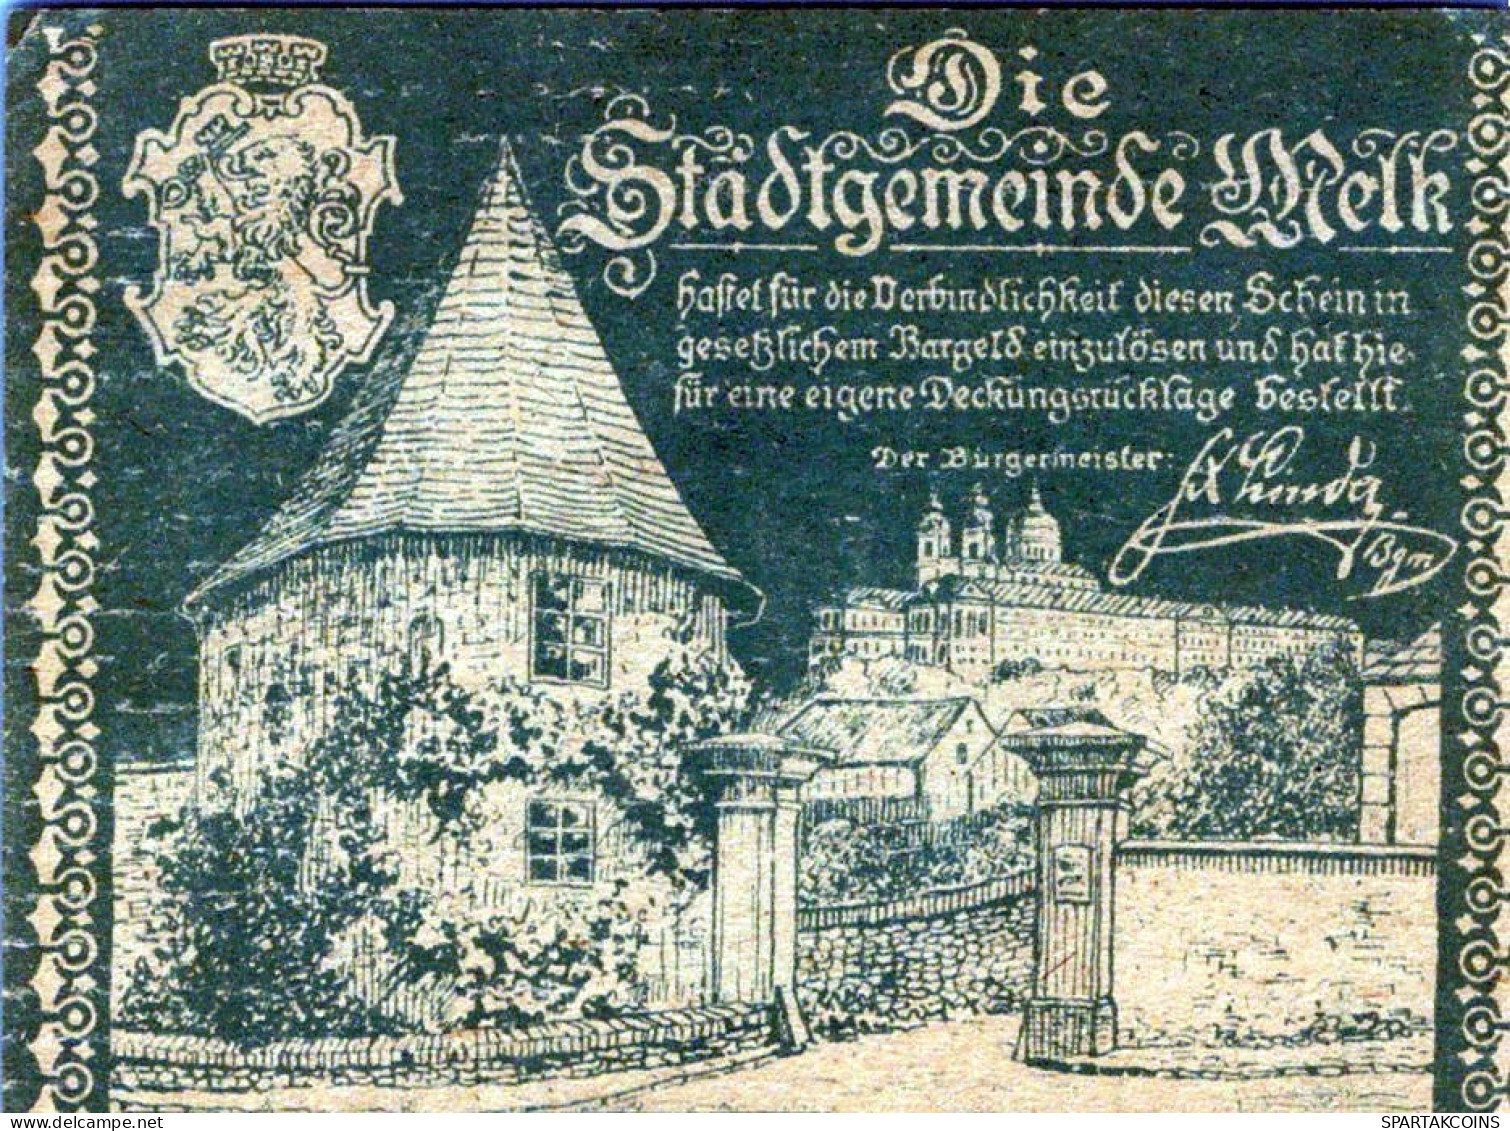 20 HELLER 1920 Stadt MELK Niedrigeren Österreich Notgeld Banknote #PD825 - Lokale Ausgaben